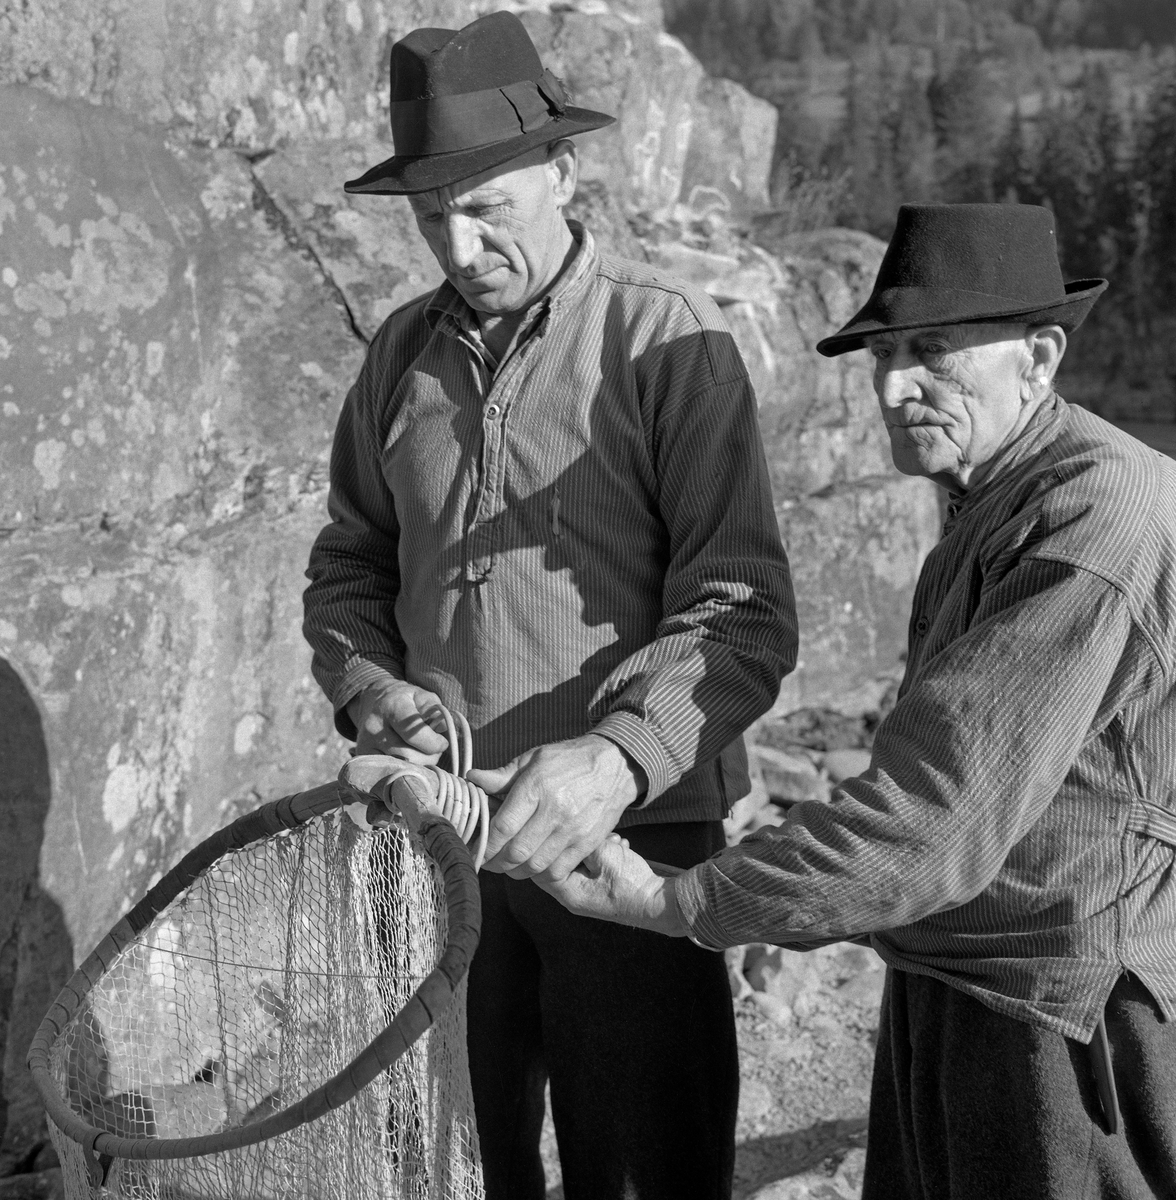 Lågåsildfiskerne Ole Haugen (1912-1982) og Arne O. Haugen (1883-1974, Oles far), fotografert ved bredden av Gudbrandsdalslågen, der de viste fram en stokkhåv hvor de nettopp hadde bundet «hugguet» på «rauna» (skaftet).  Rauna var lagd av langsomtvokst, seig tennargran.  På stokkehåver brukte rauna å være 6,5 til 8,5 meter lang.  Håvhugguet ble lagd av grankvister  med litt stammeved i endene.  Denne stammeveden som ble brukt som anlegg på enden av rauna.  Kvistene ble bøyt mot hverandre, slik at de dannet ei bøyle, som «påsan» kunne bindes på.  Sammenføyinga ble gjort ved hjelp av et par spikere og påsurret tau eller, som her, splittet bambus.  Påsan var et nett, bundet av lin.   Bak karene ser vi et flettet bæreredskap, en såkalt «snik», som ble brukt som beholder for fangsten.   Både far og sønn Haugen var kledd i vadmelsbukser og busserull, og de brukte svarte, vidbremmete hatter som hodeplagg.

Stokkehåven ble brukt fra en båt - ei «åfløy» - som var forankret i en stokk, som i sin tur var festet i stein i elveløpet.  Deler av fiskeribiologen Hartvig Huitfedt-Kaas' beskrivelse av håvene og stokkhåvfisket fra 1917 er gjengitt under fanen «Opplysninger».